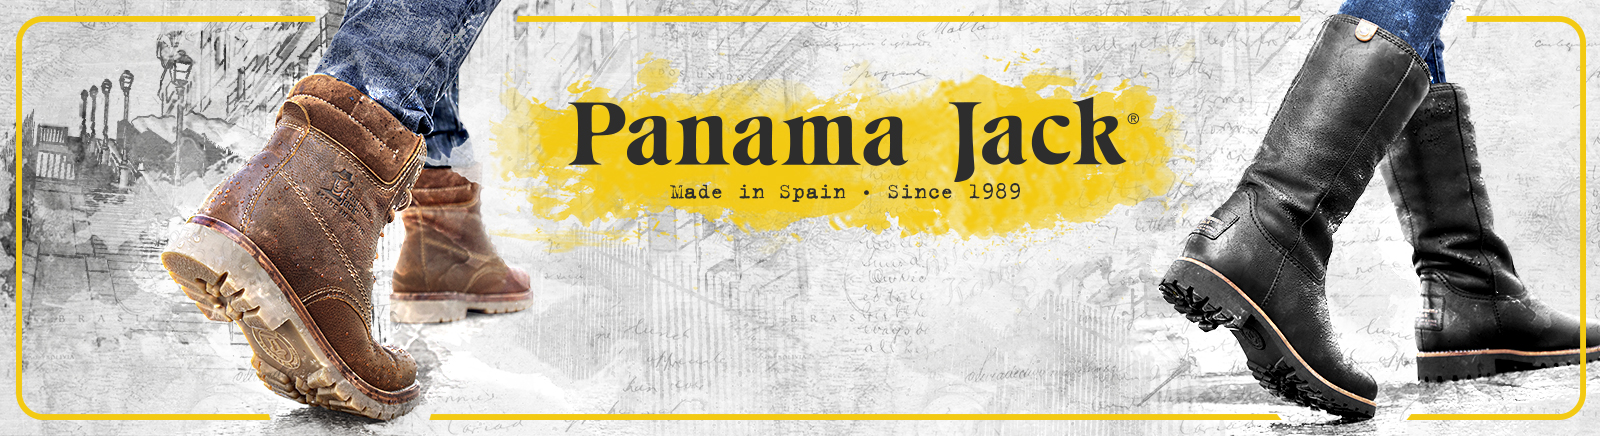 Panama Jack Herrenschue online entdecken im Juppen Schuhe Shop